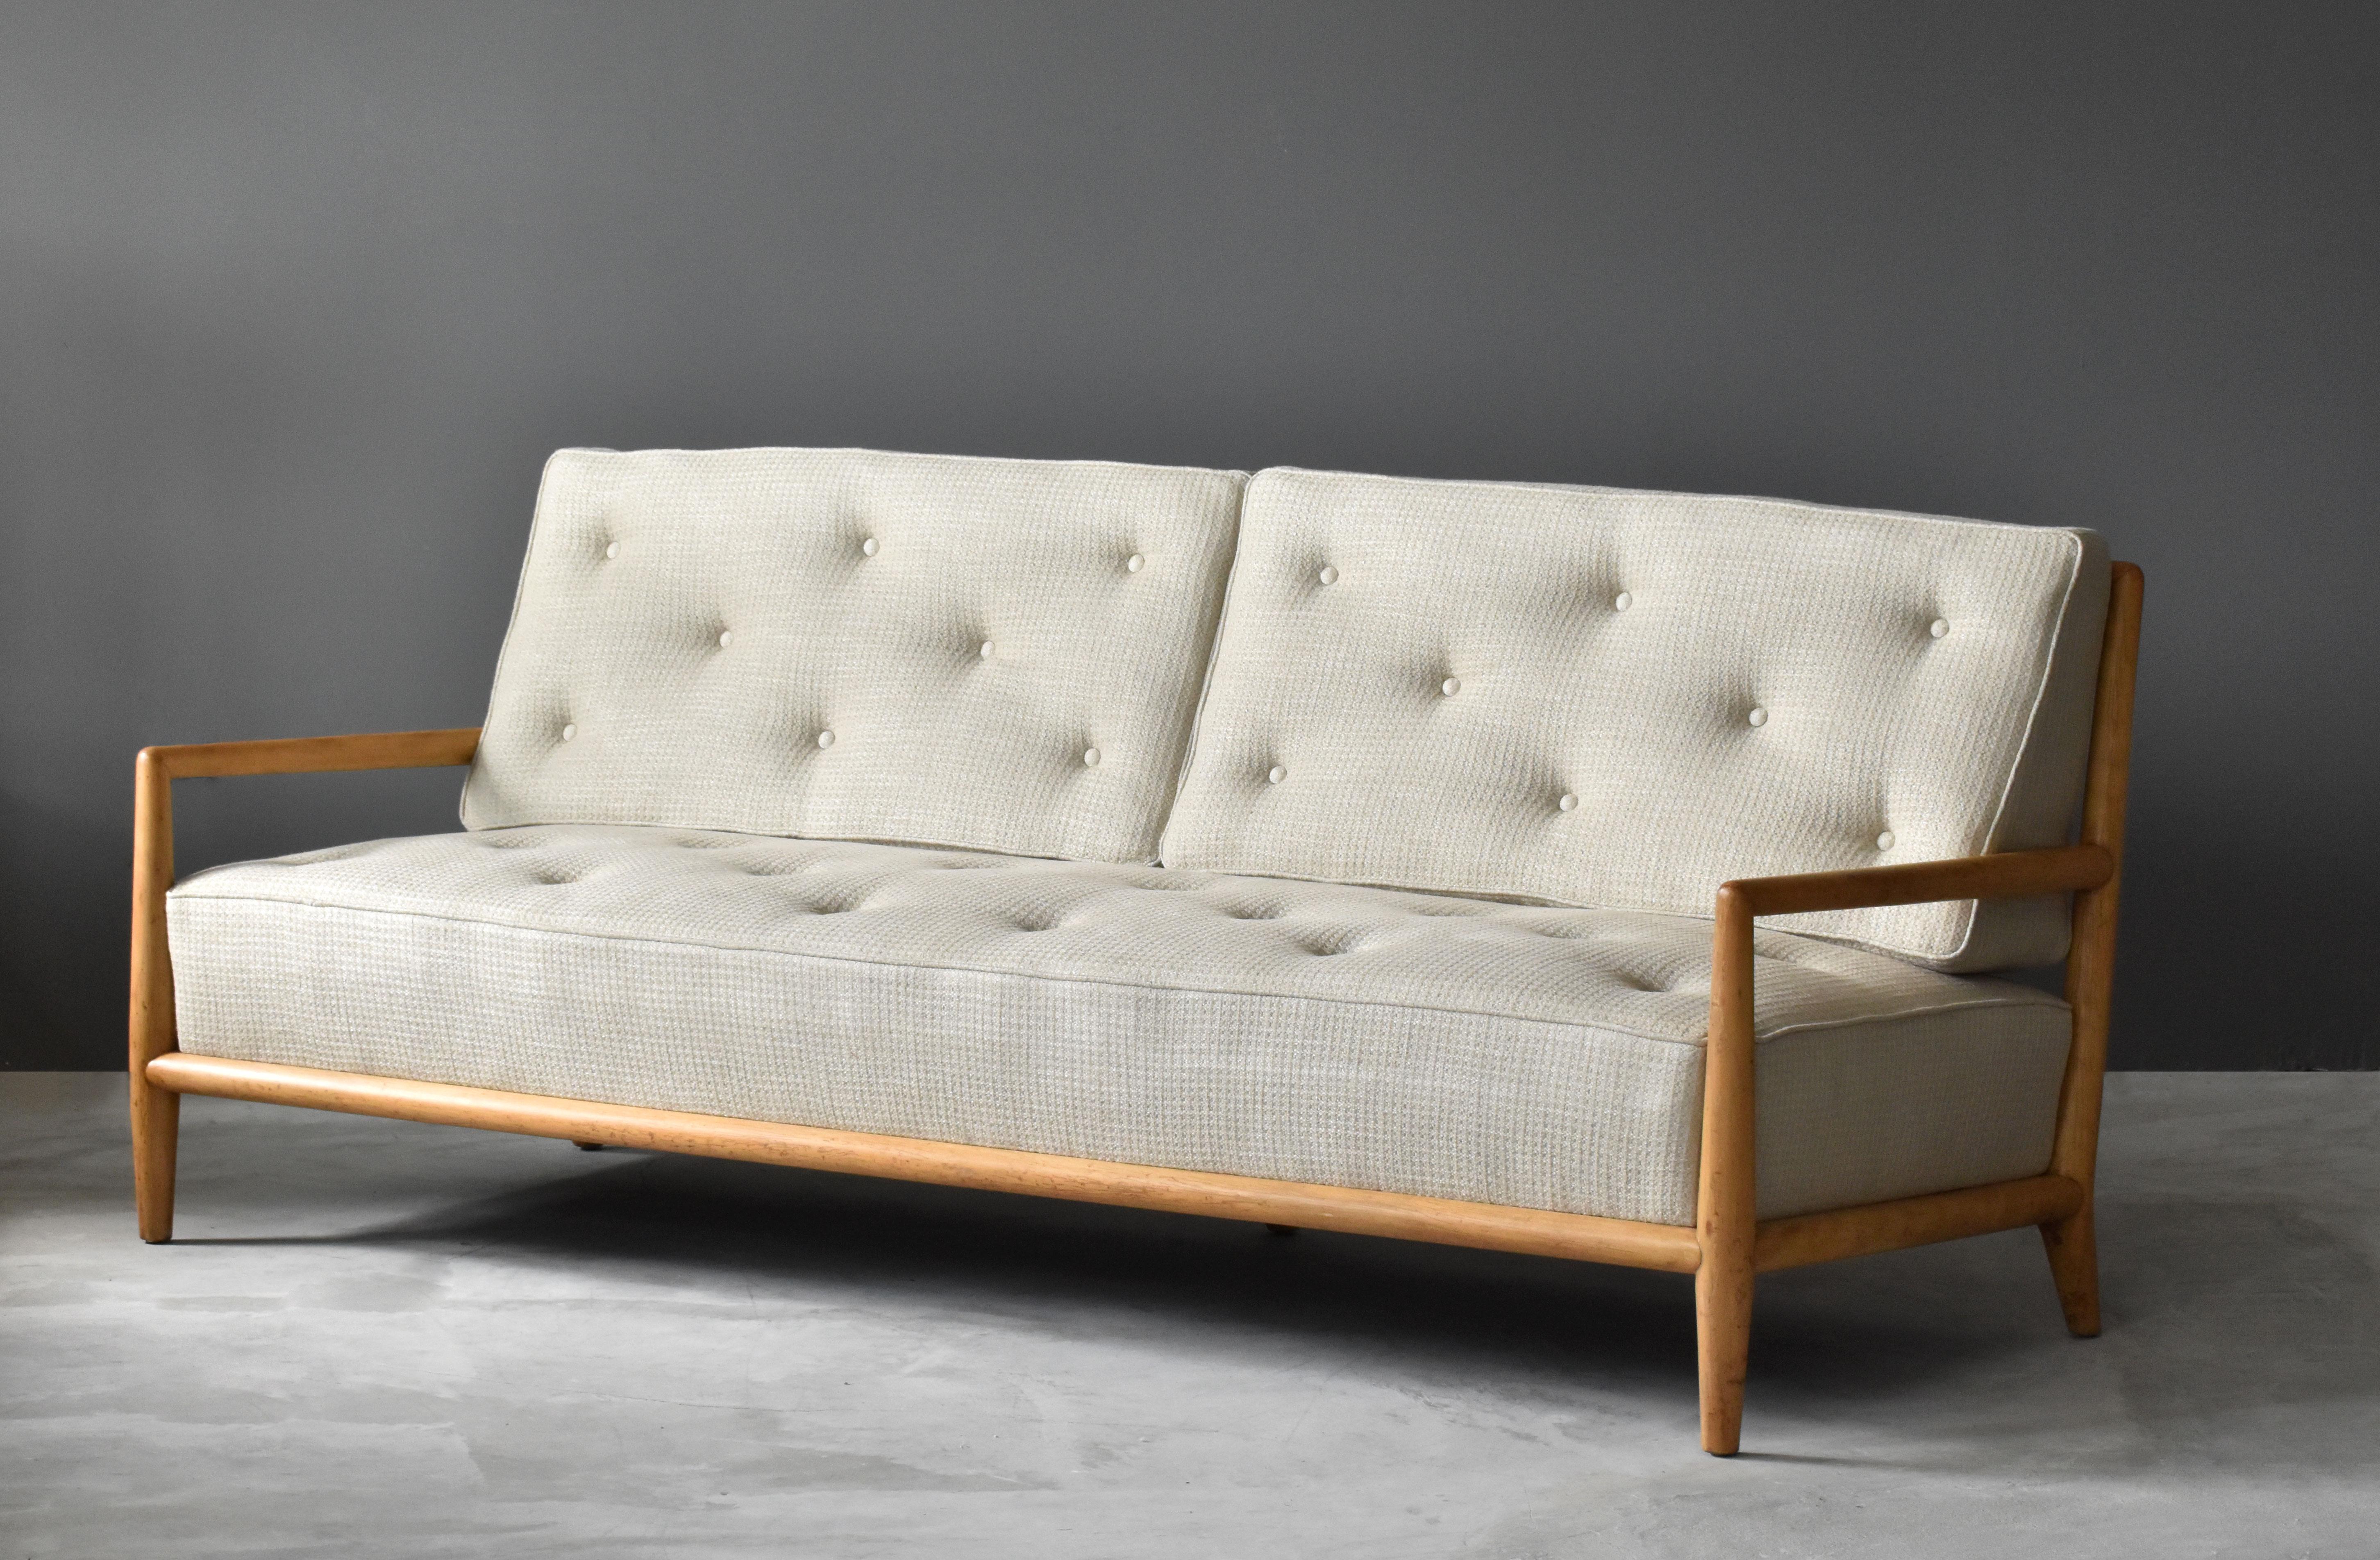 Ein Sofa:: Modell 1678:: entworfen von T.H. Robsjohn-Gibbings für Widdicomb Furniture Company:: Grand Rapids:: Michigan. 

In seiner typischen Art und Weise verbindet Robsjohn-Gibbings einen modernen Ausdruck mit der zurückhaltenden Eleganz der